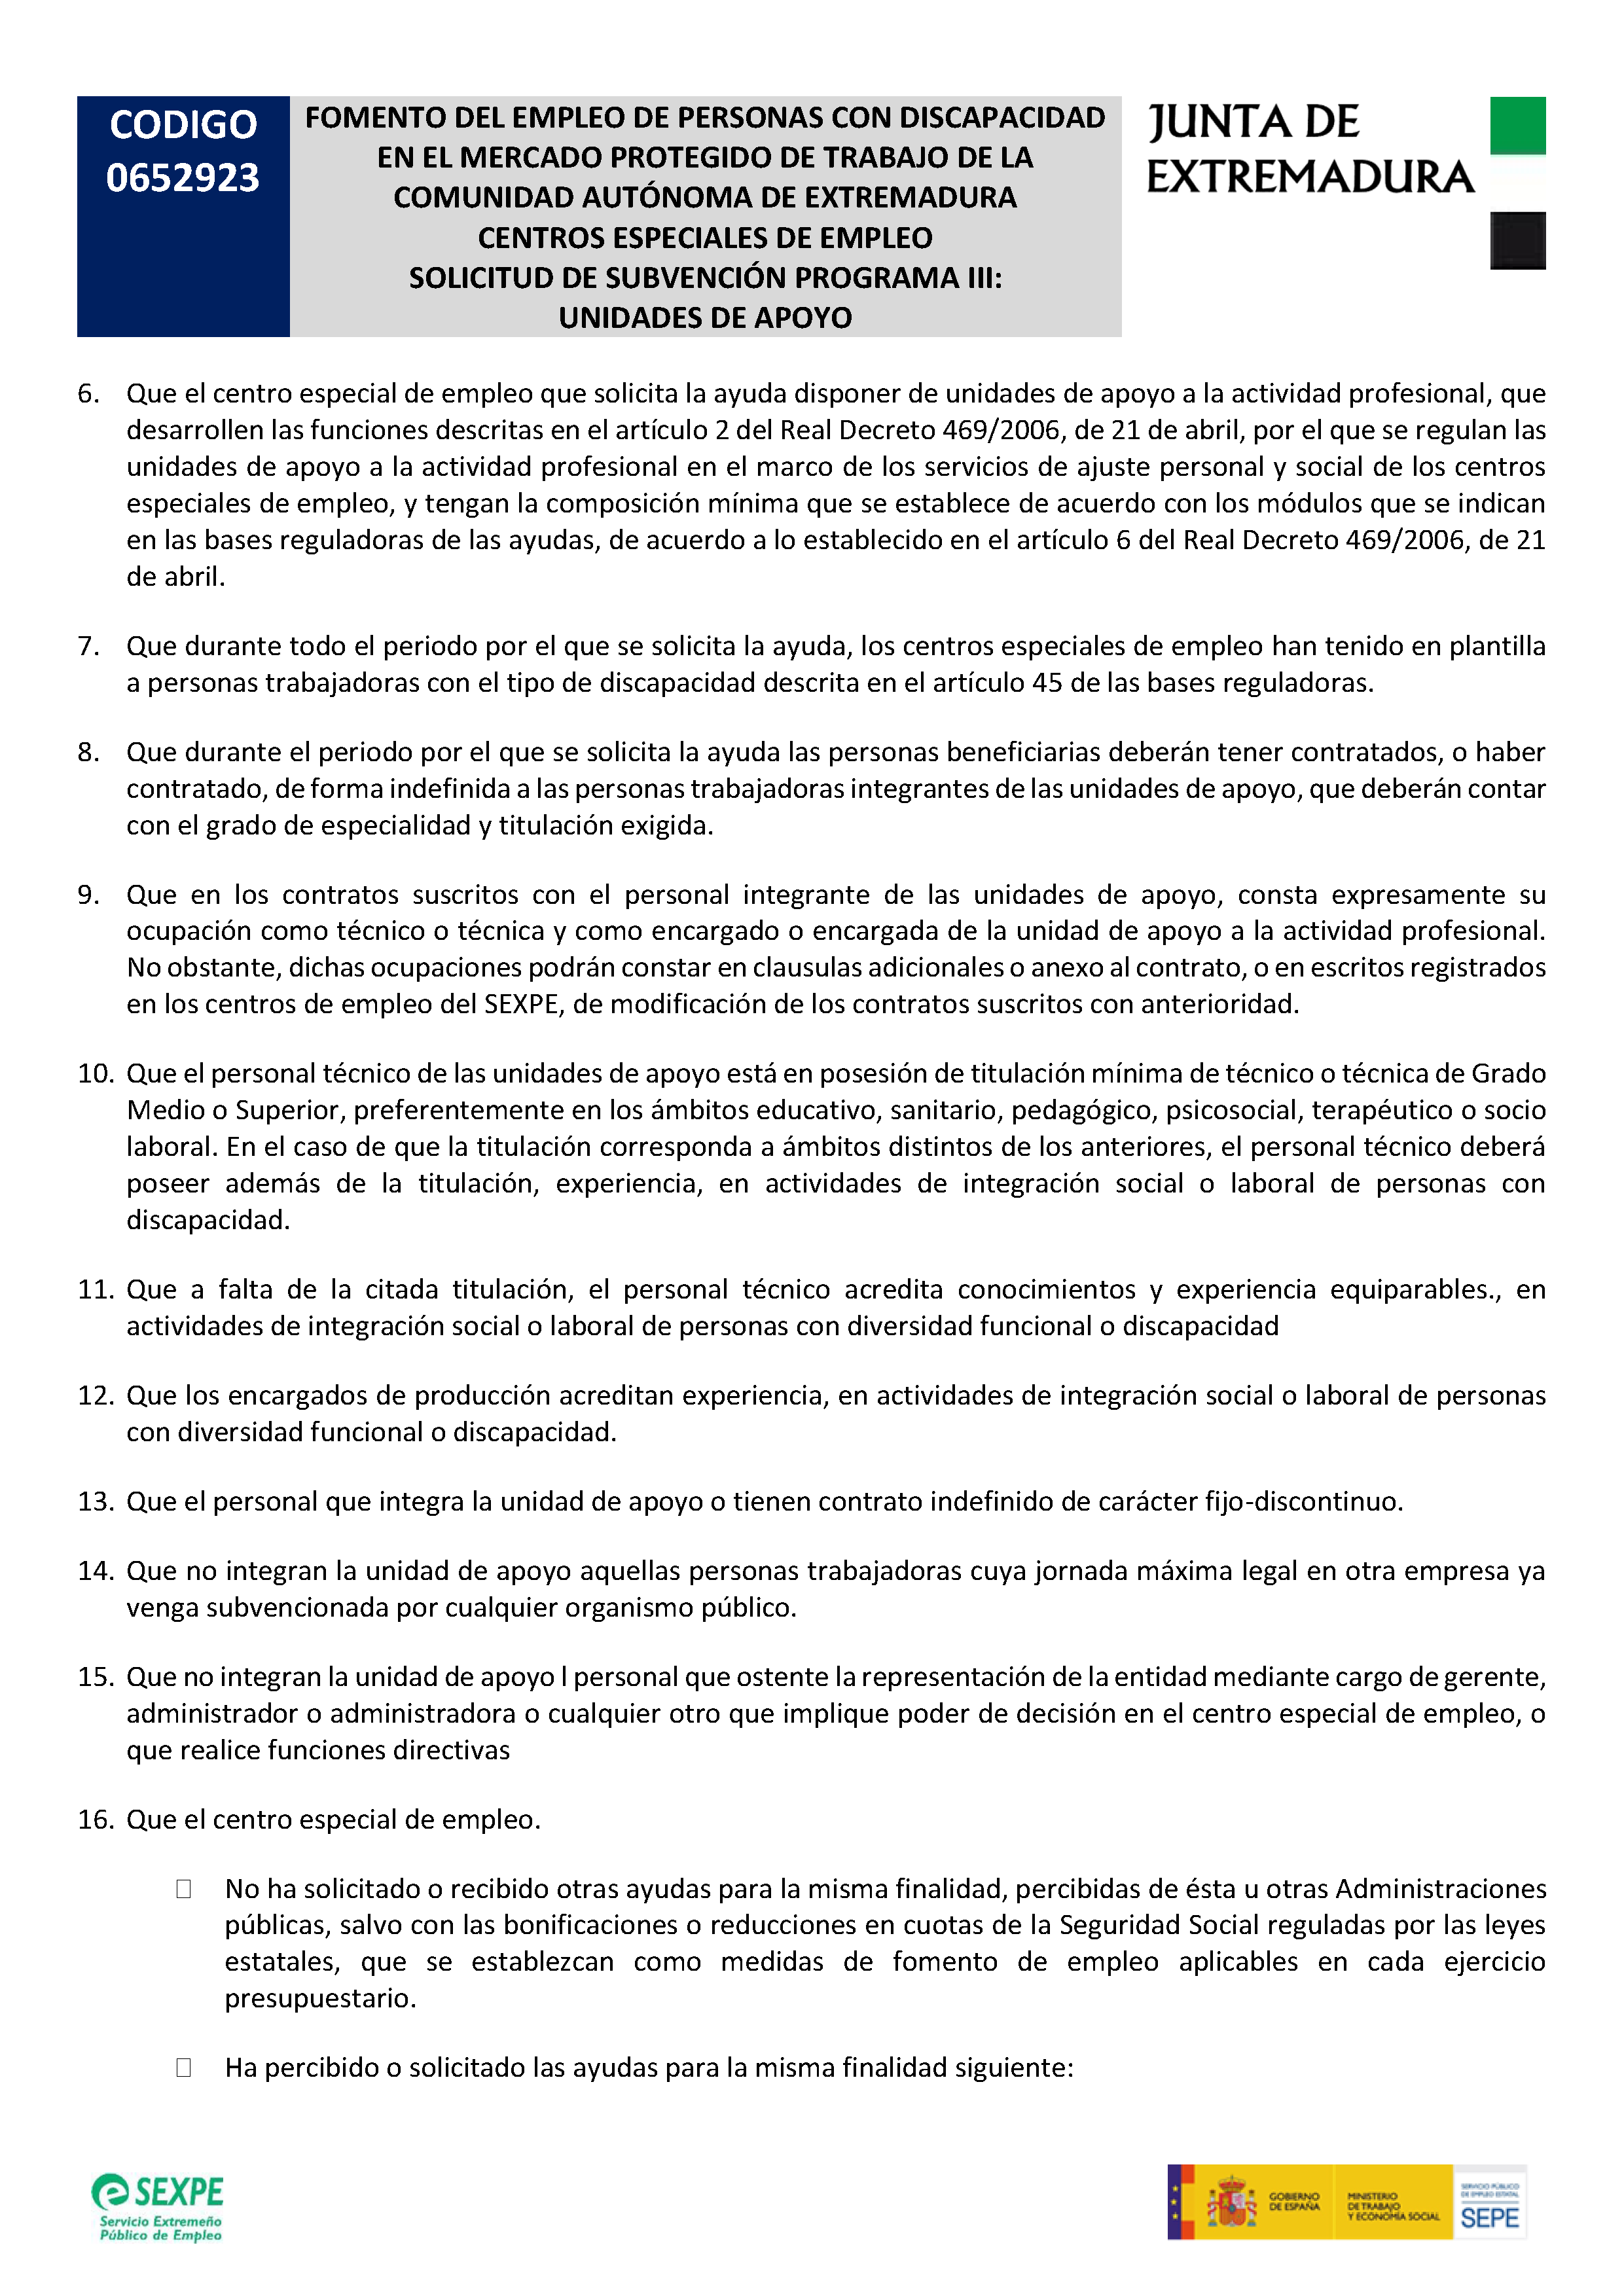 FOMENTO DEL EMPLEO EN PERSONAS CON DISCAPACIDAD III Pag 6